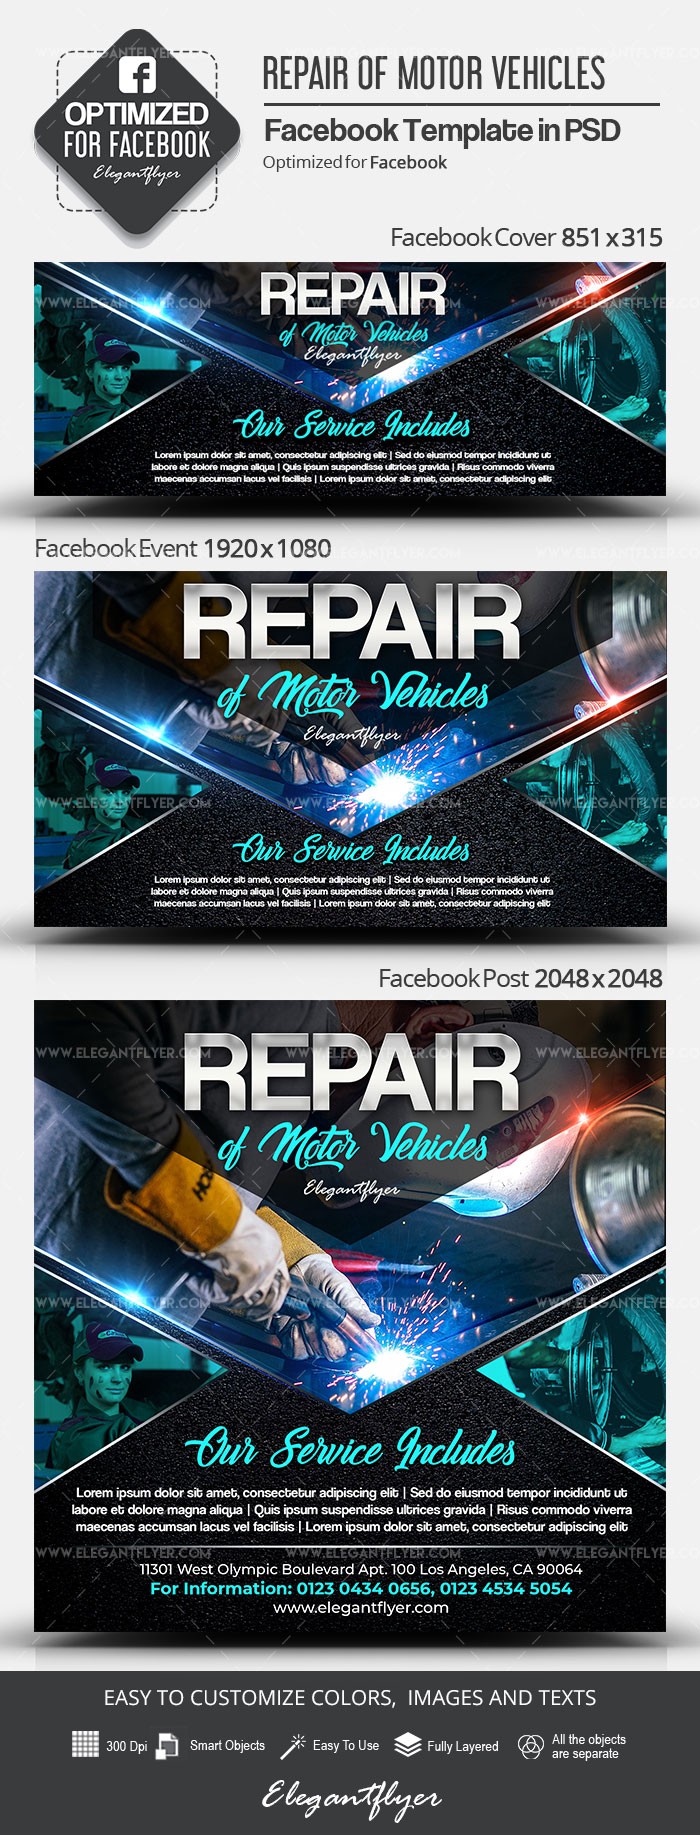 Repair of Motor Vehicles Facebook by ElegantFlyer